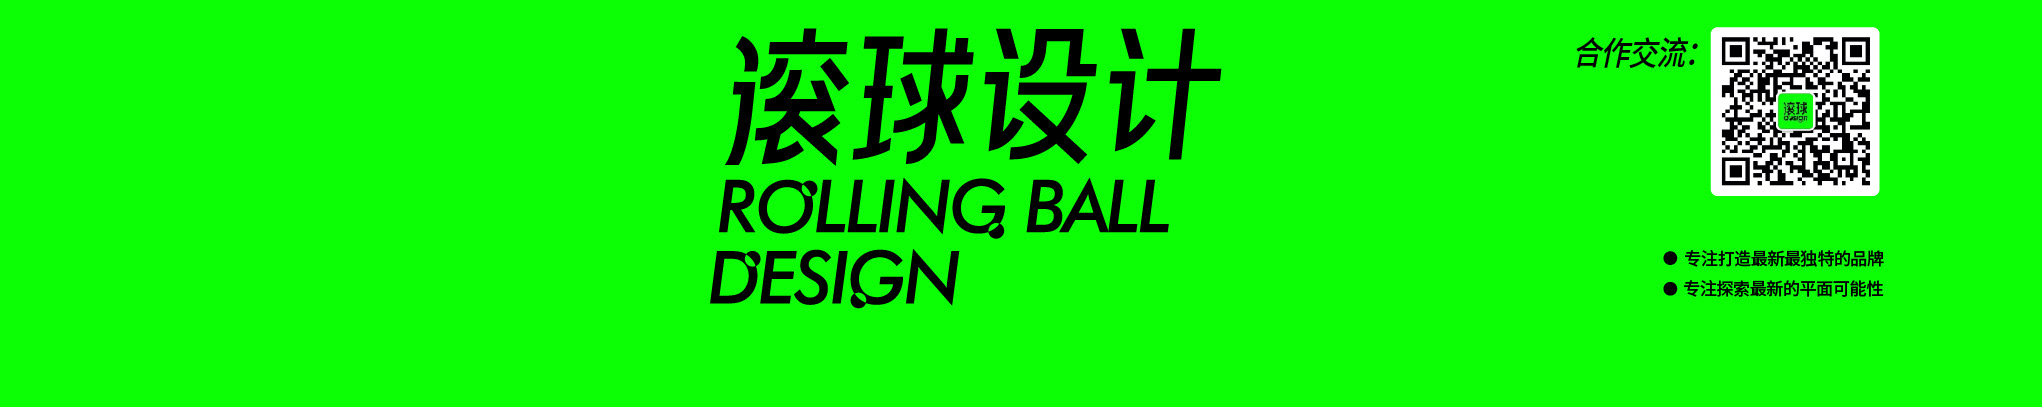 滚球设计 RBD DESIGN's profile banner